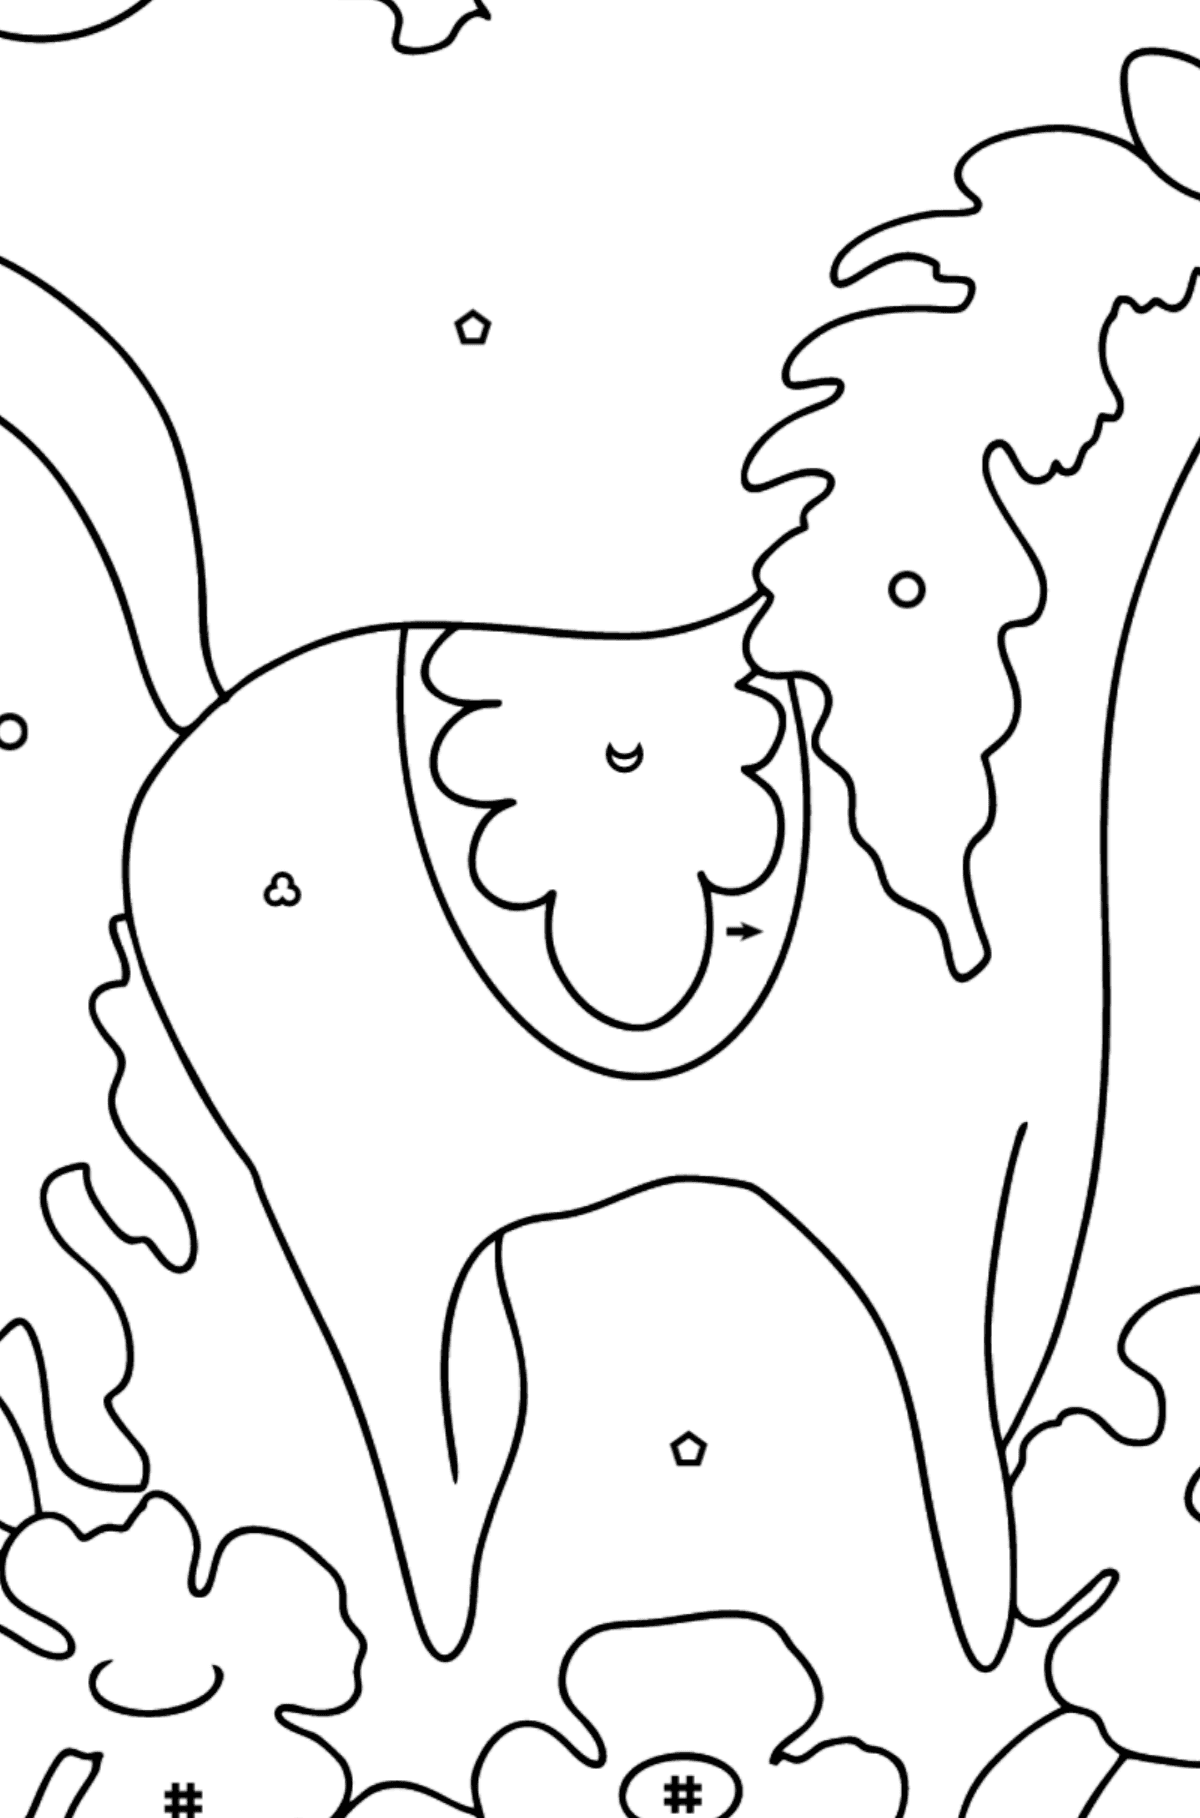 Розмальовка Чарівний кінь - Розмальовка по Символам і Геометричним Фігурам для дітей